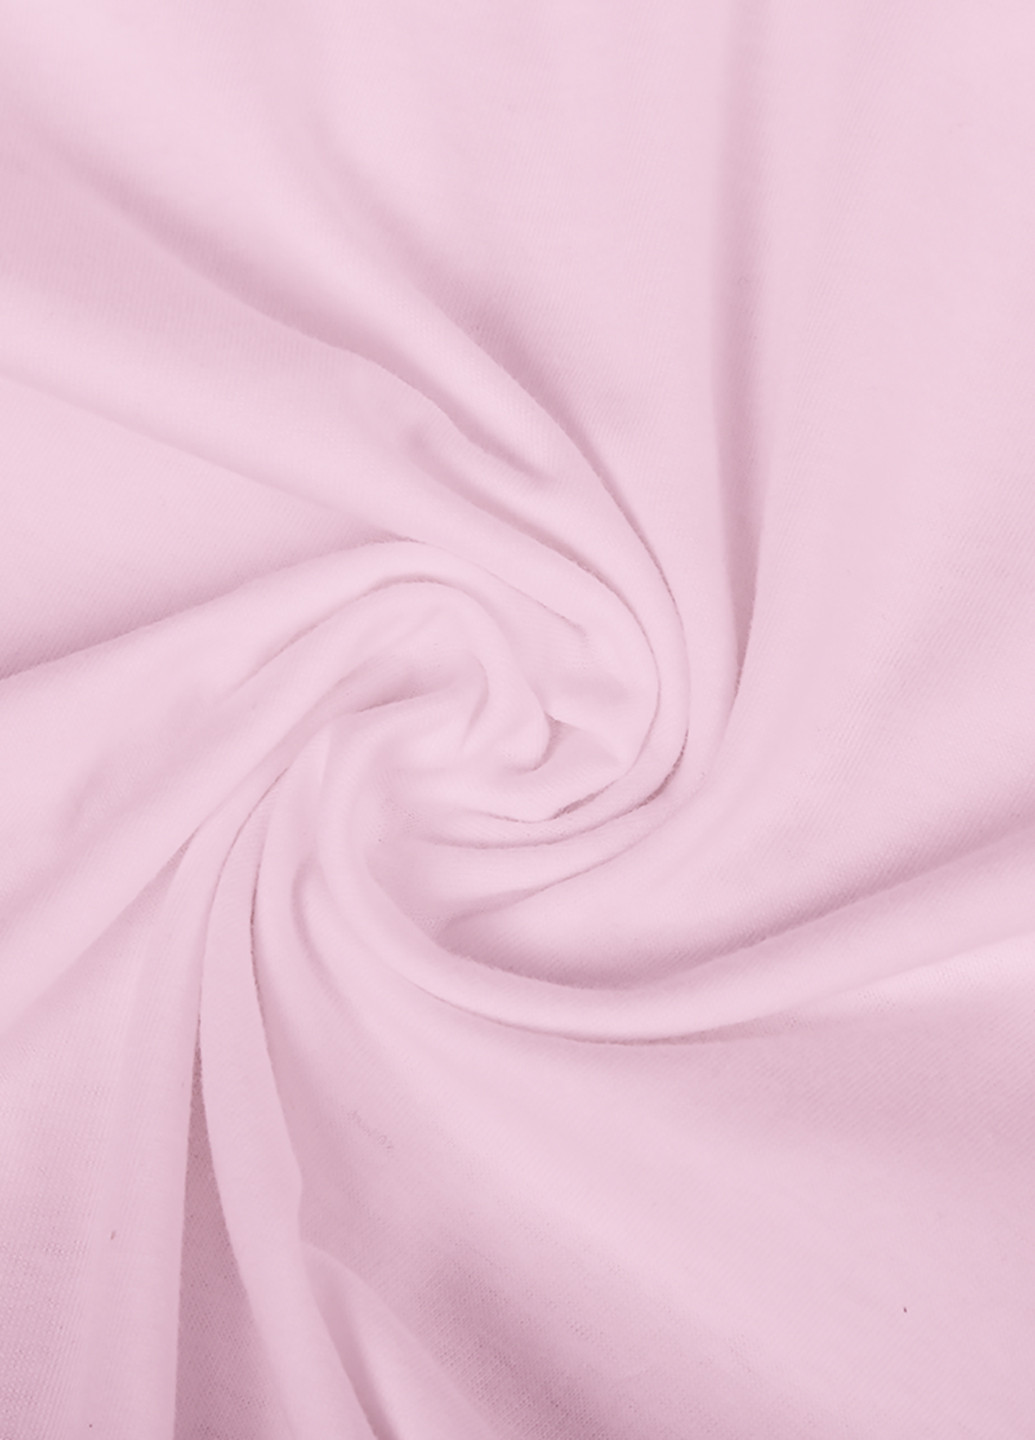 Розовая демисезонная футболка детская пубг пабг (pubg)(9224-1710) MobiPrint